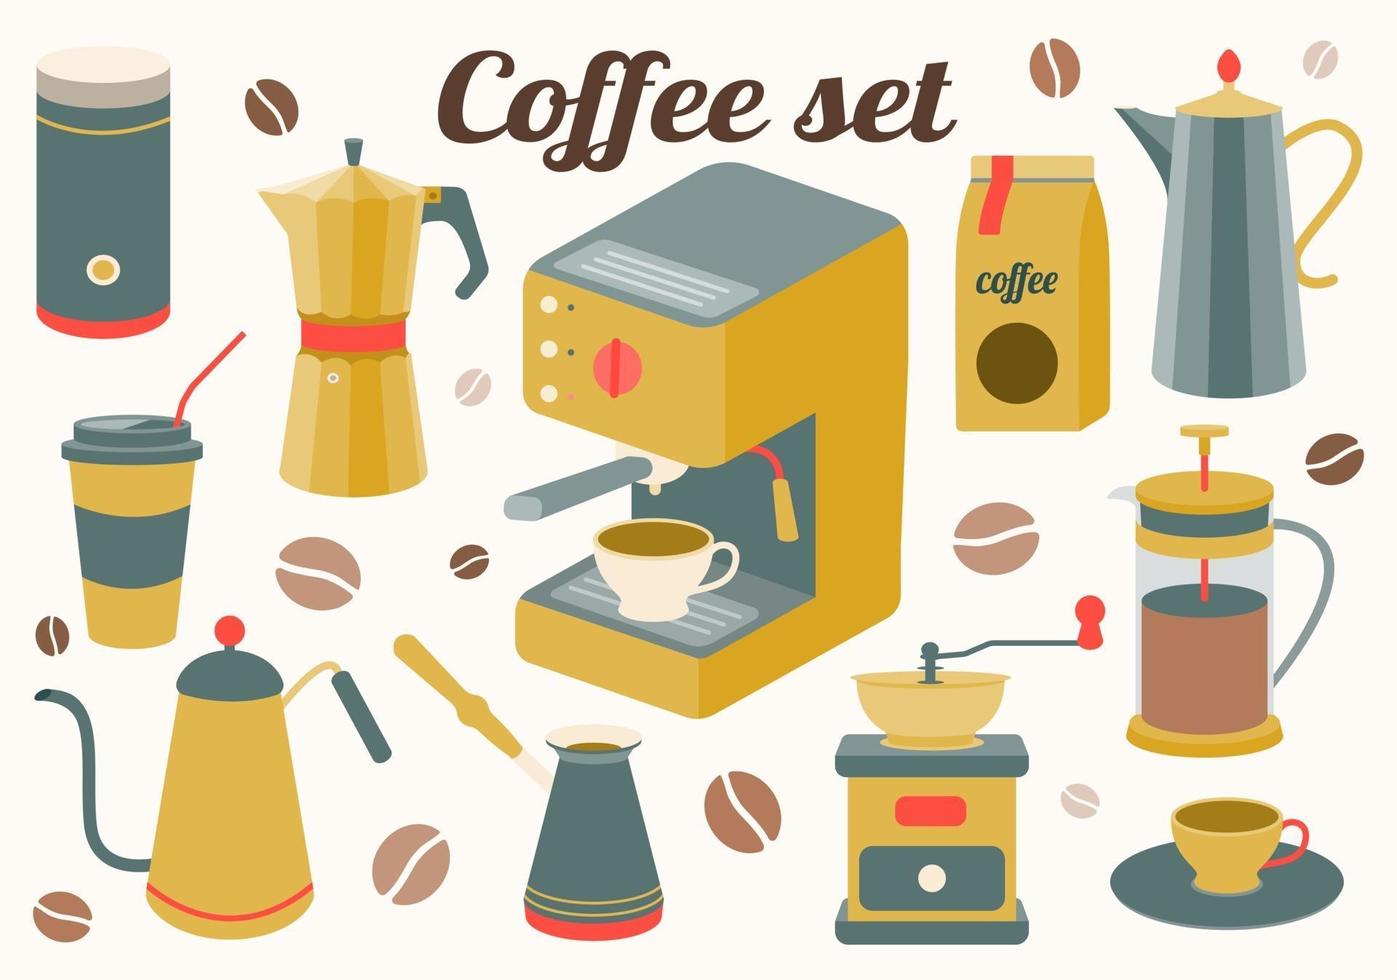 Juego de accesorios de cocina para café para hacer una bebida. fabricante, prensa francesa, olla, cafetera, molinillo, granos. ilustración vectorial vector